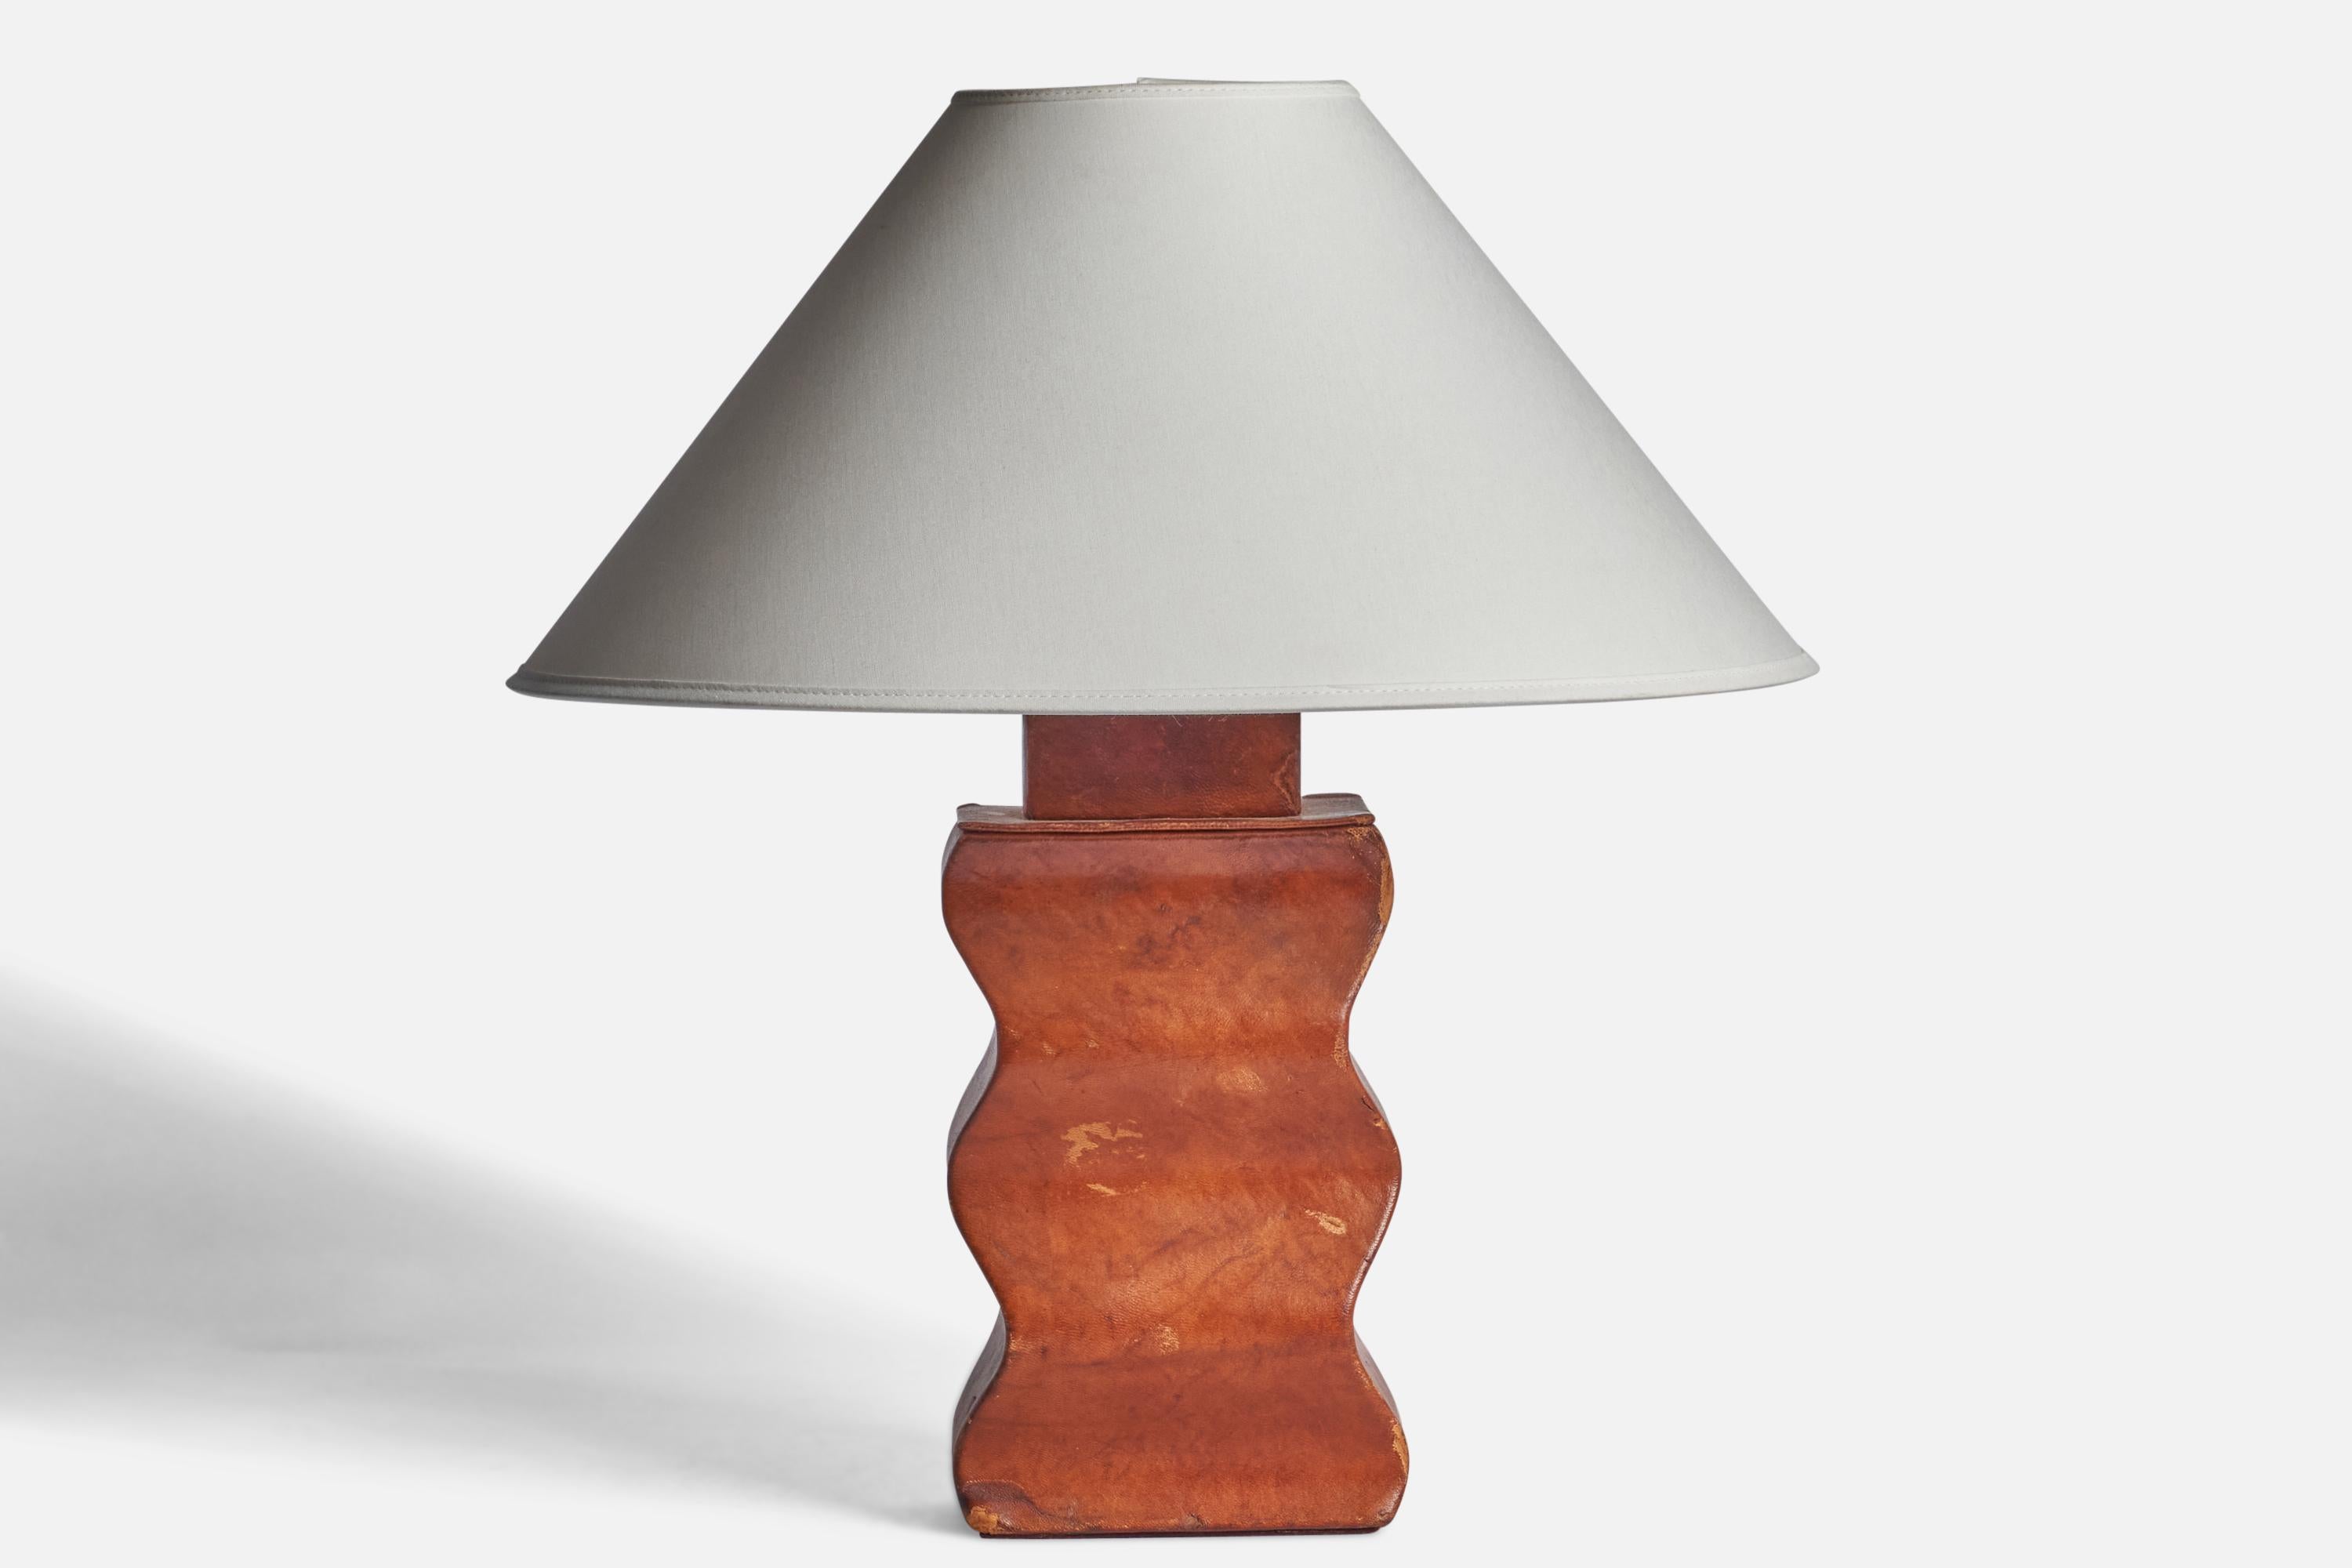 
Lampe de table en bois recouvert de cuir organique, conçue et produite aux États-Unis dans les années 1940.
Dimensions de la lampe (pouces) : 13.15